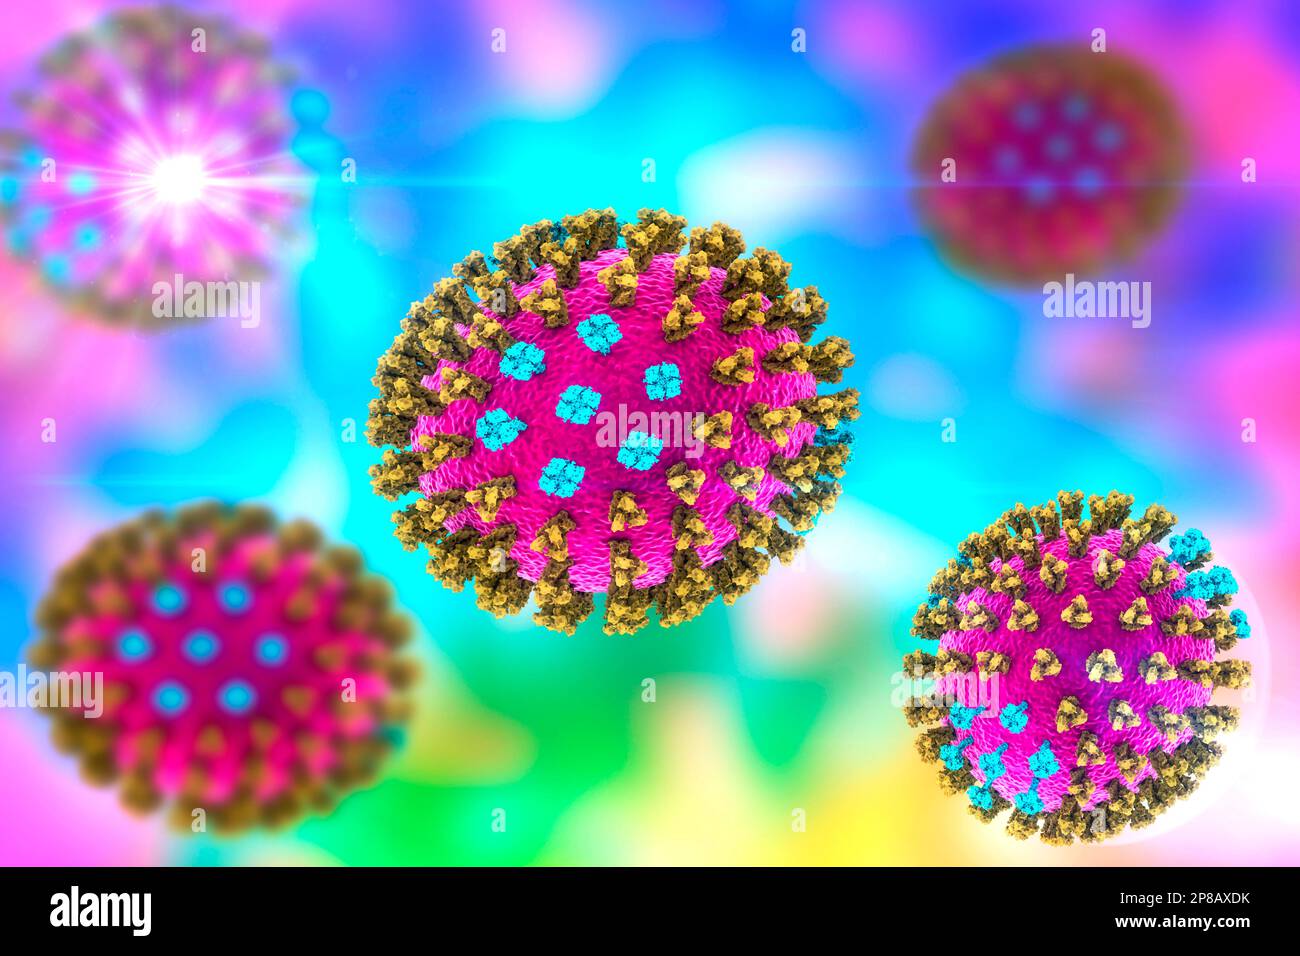 Virus influenzali, illustrazione del computer. Ciascun virus è costituito da un nucleo di materiale genetico RNA (acido ribonucleico) circondato da un rivestimento proteico (viola). Em Foto Stock